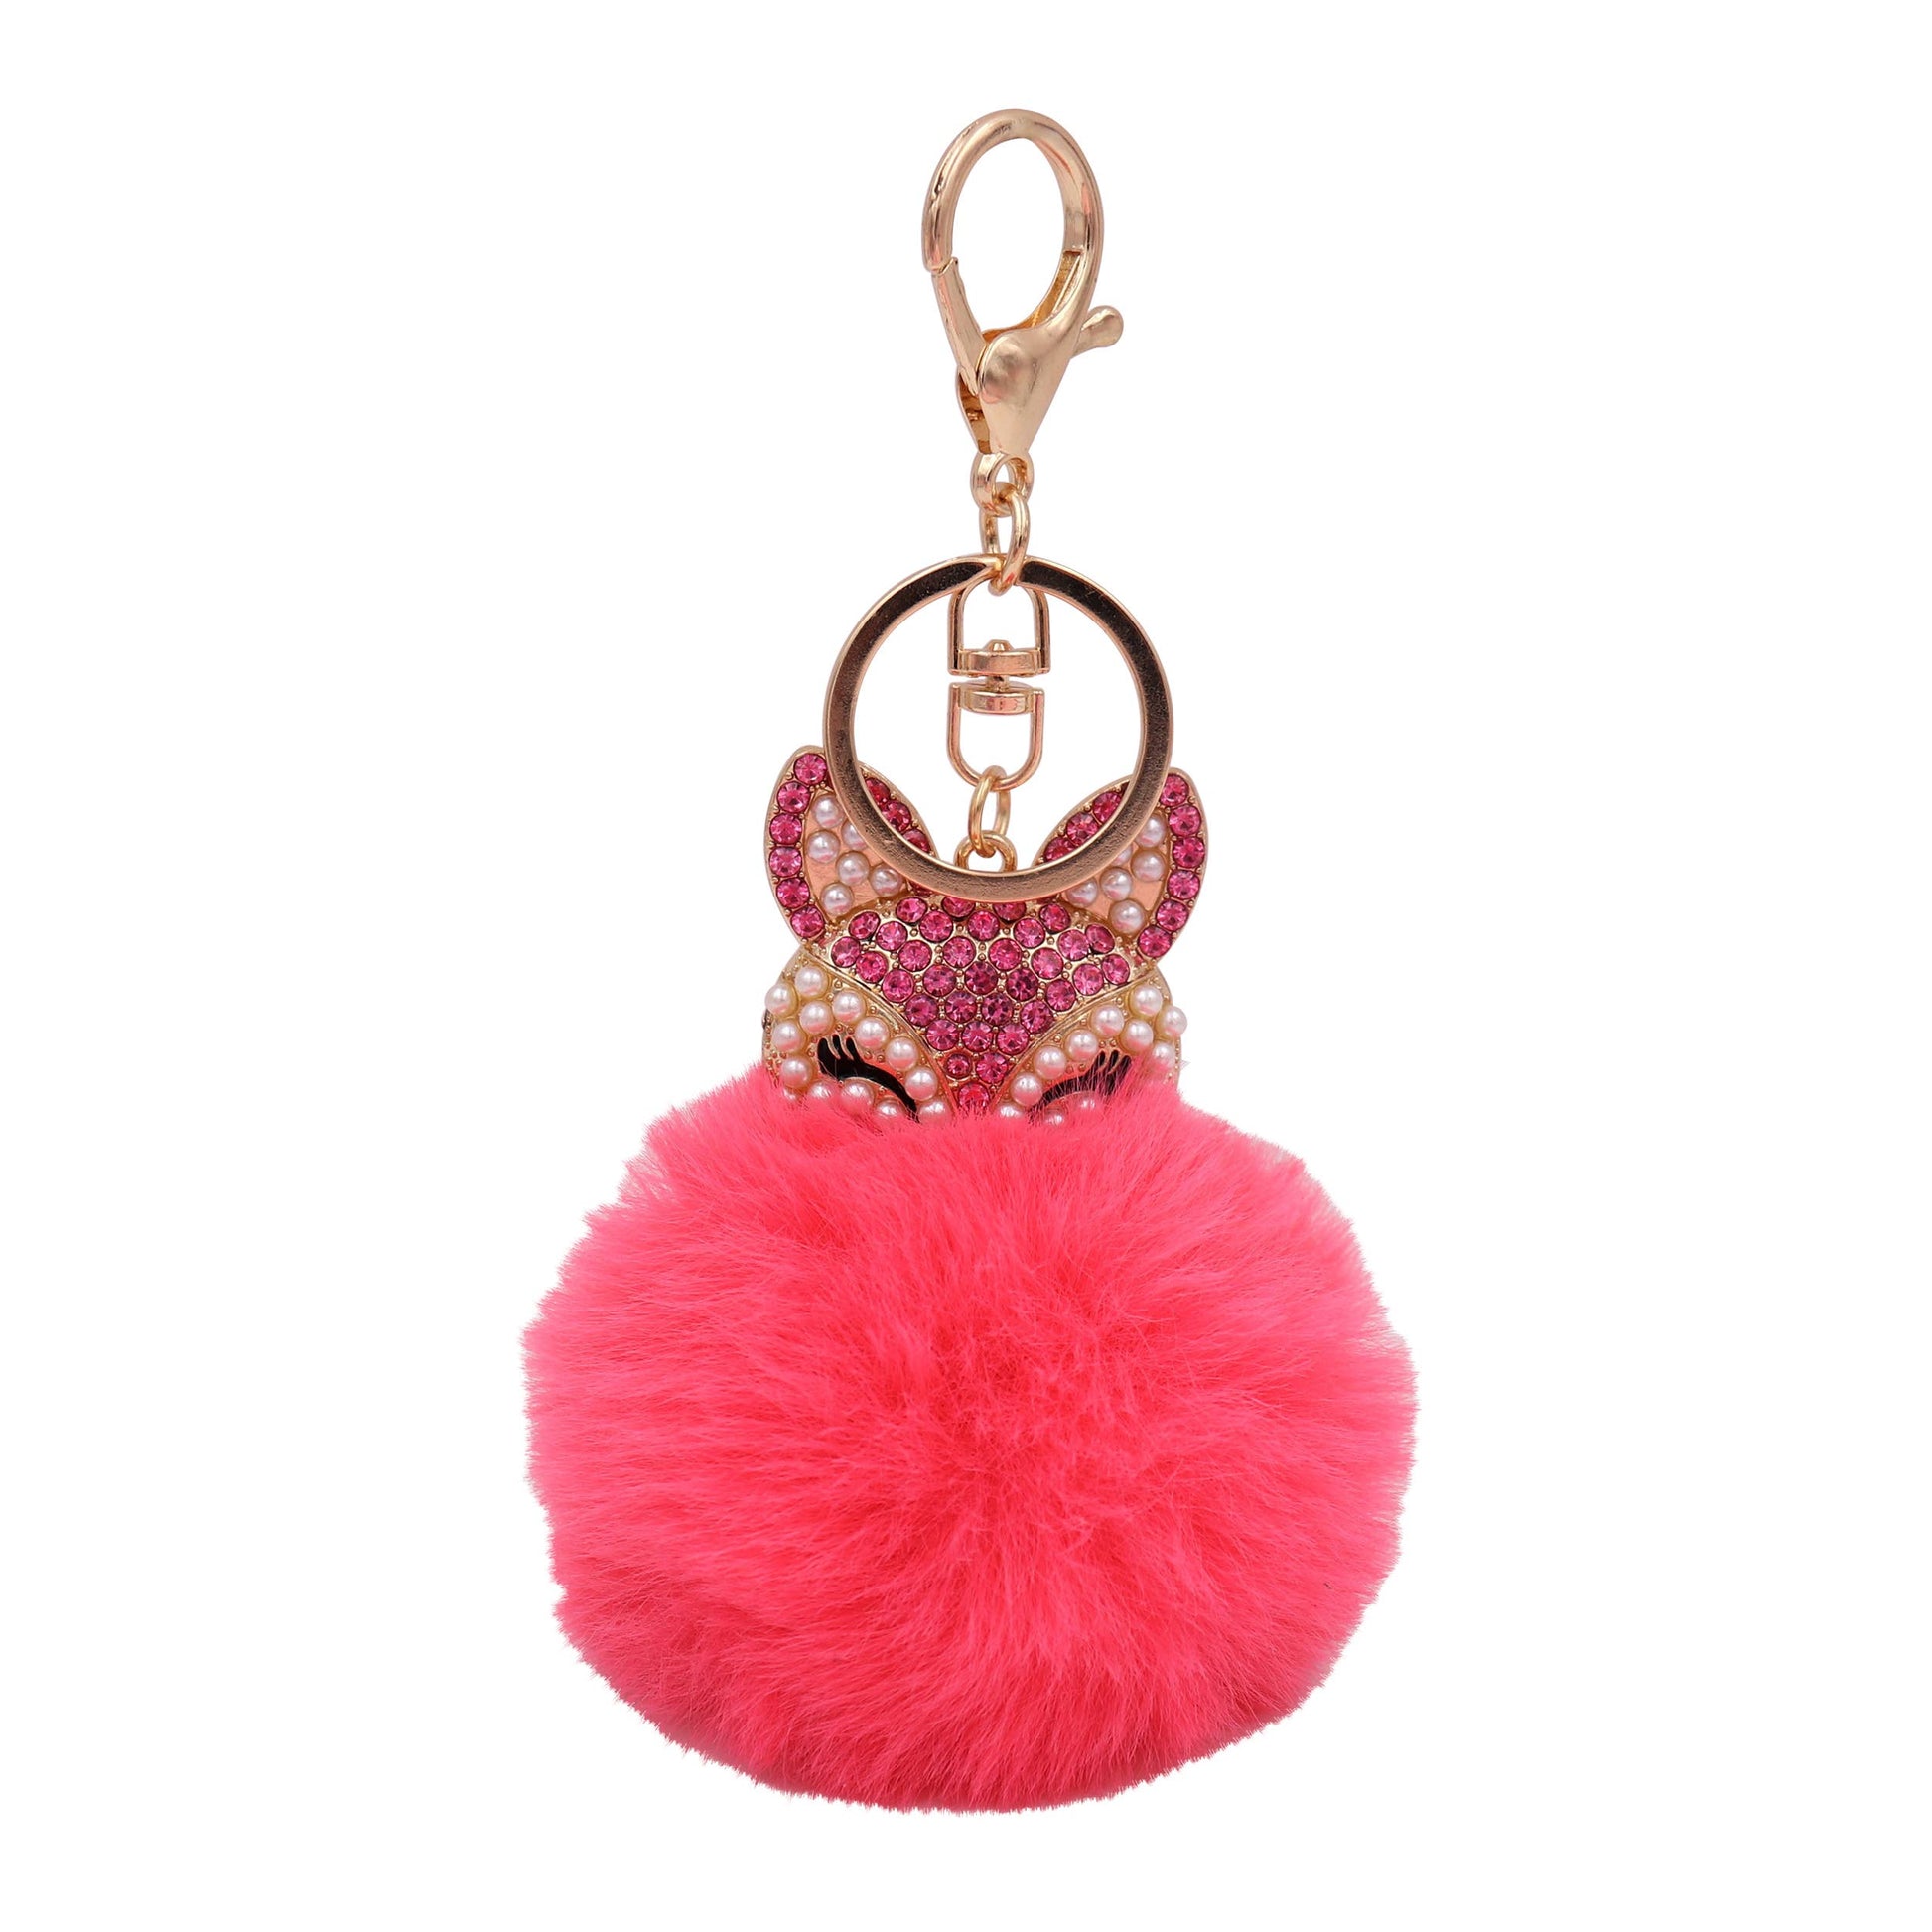 Image of Real Sic Pink Faux Fur Fuzzy Animal Fox Pom Pom Key chain - Fox Kechain